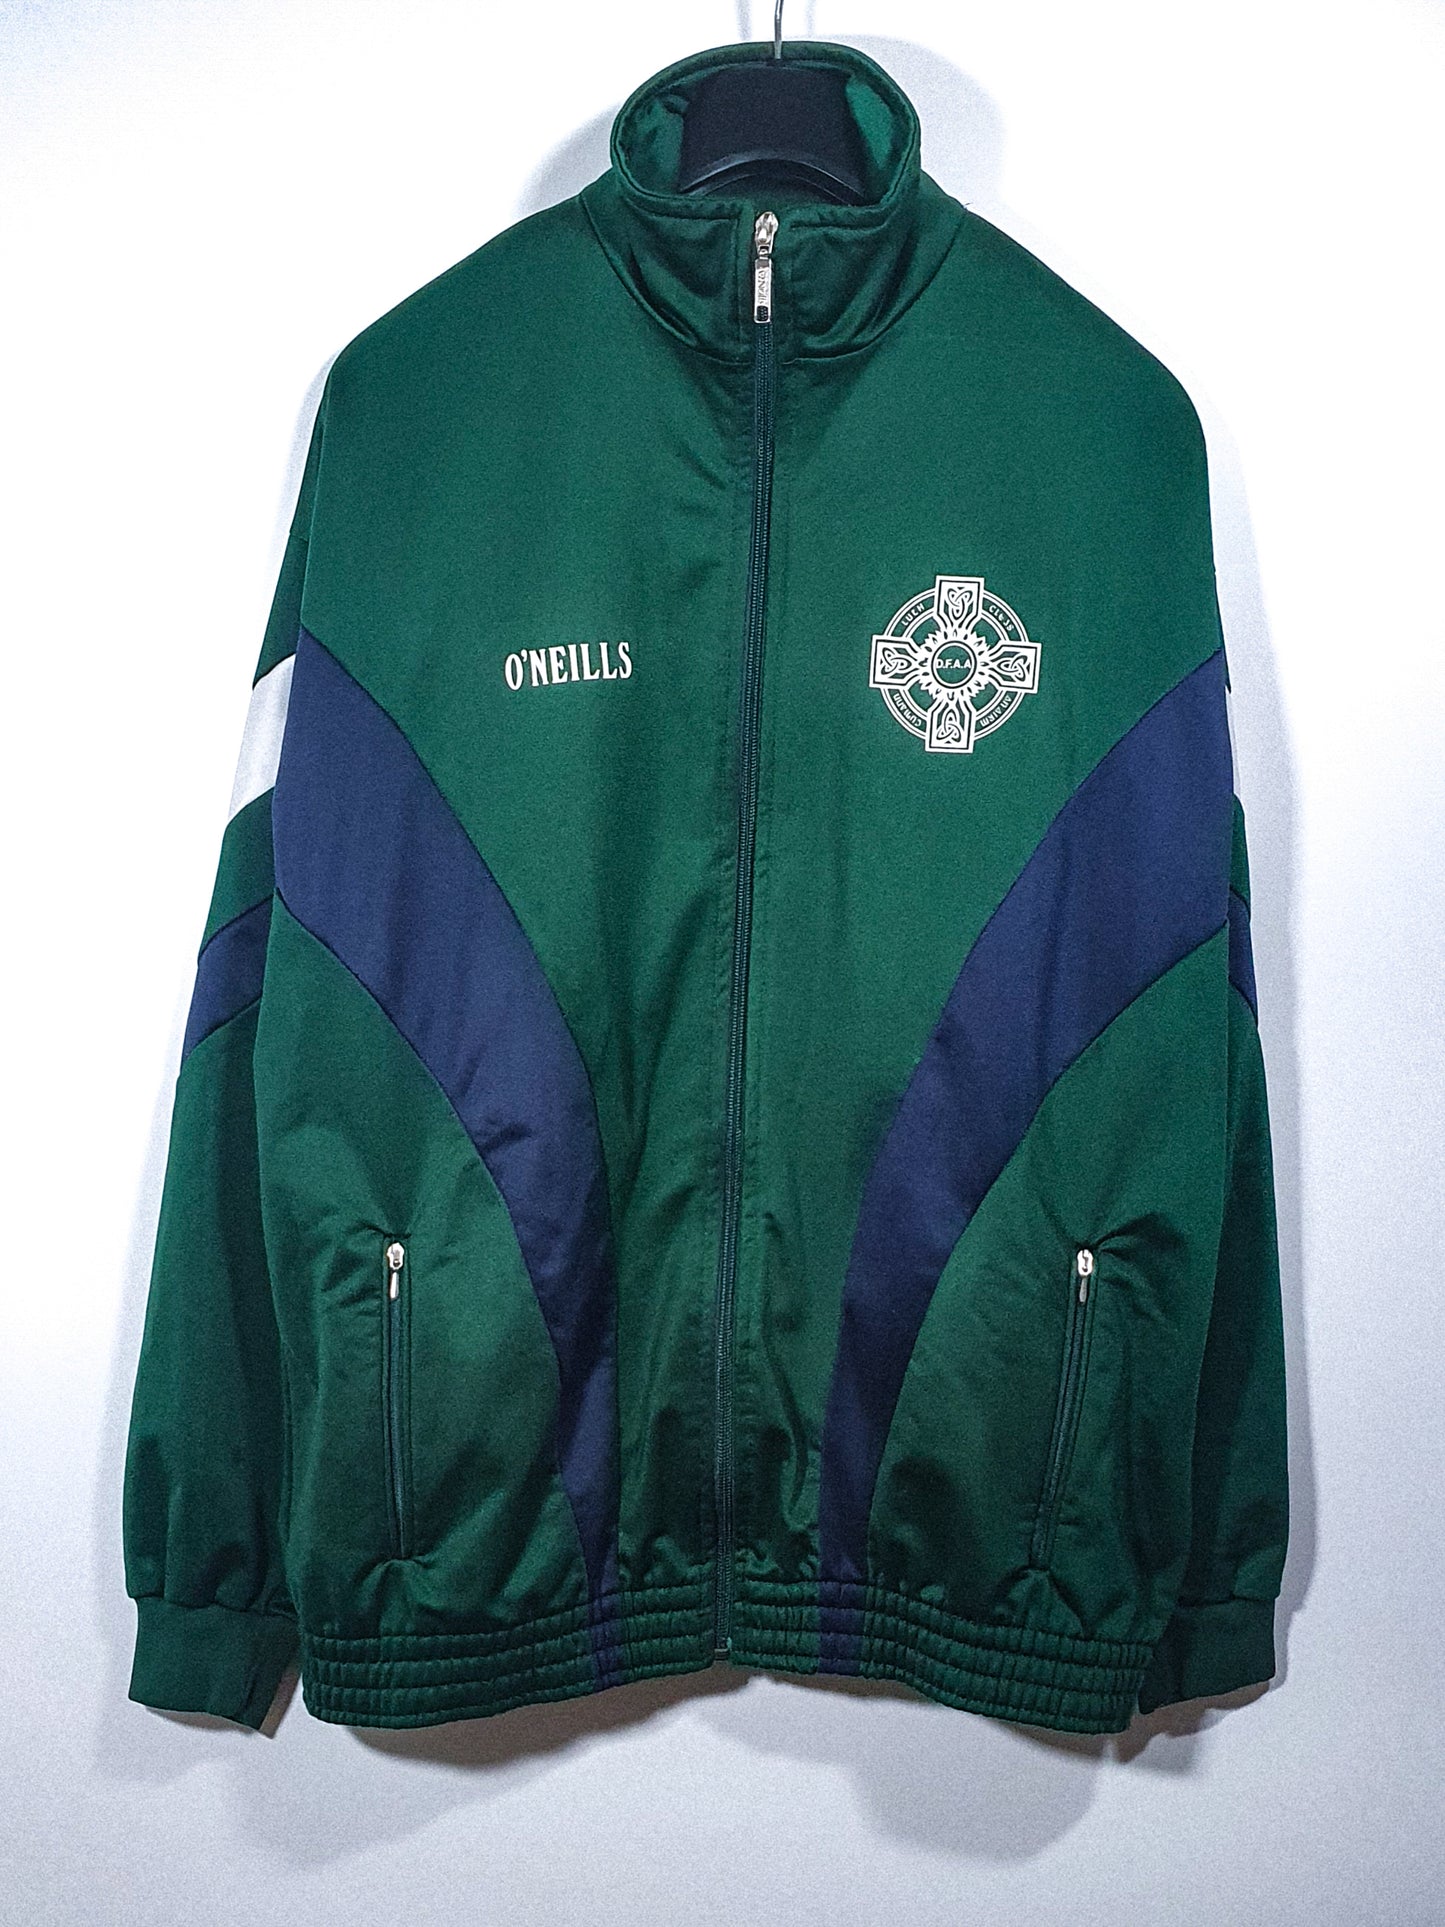 Irish Army GAA Jacket 1990s (L)